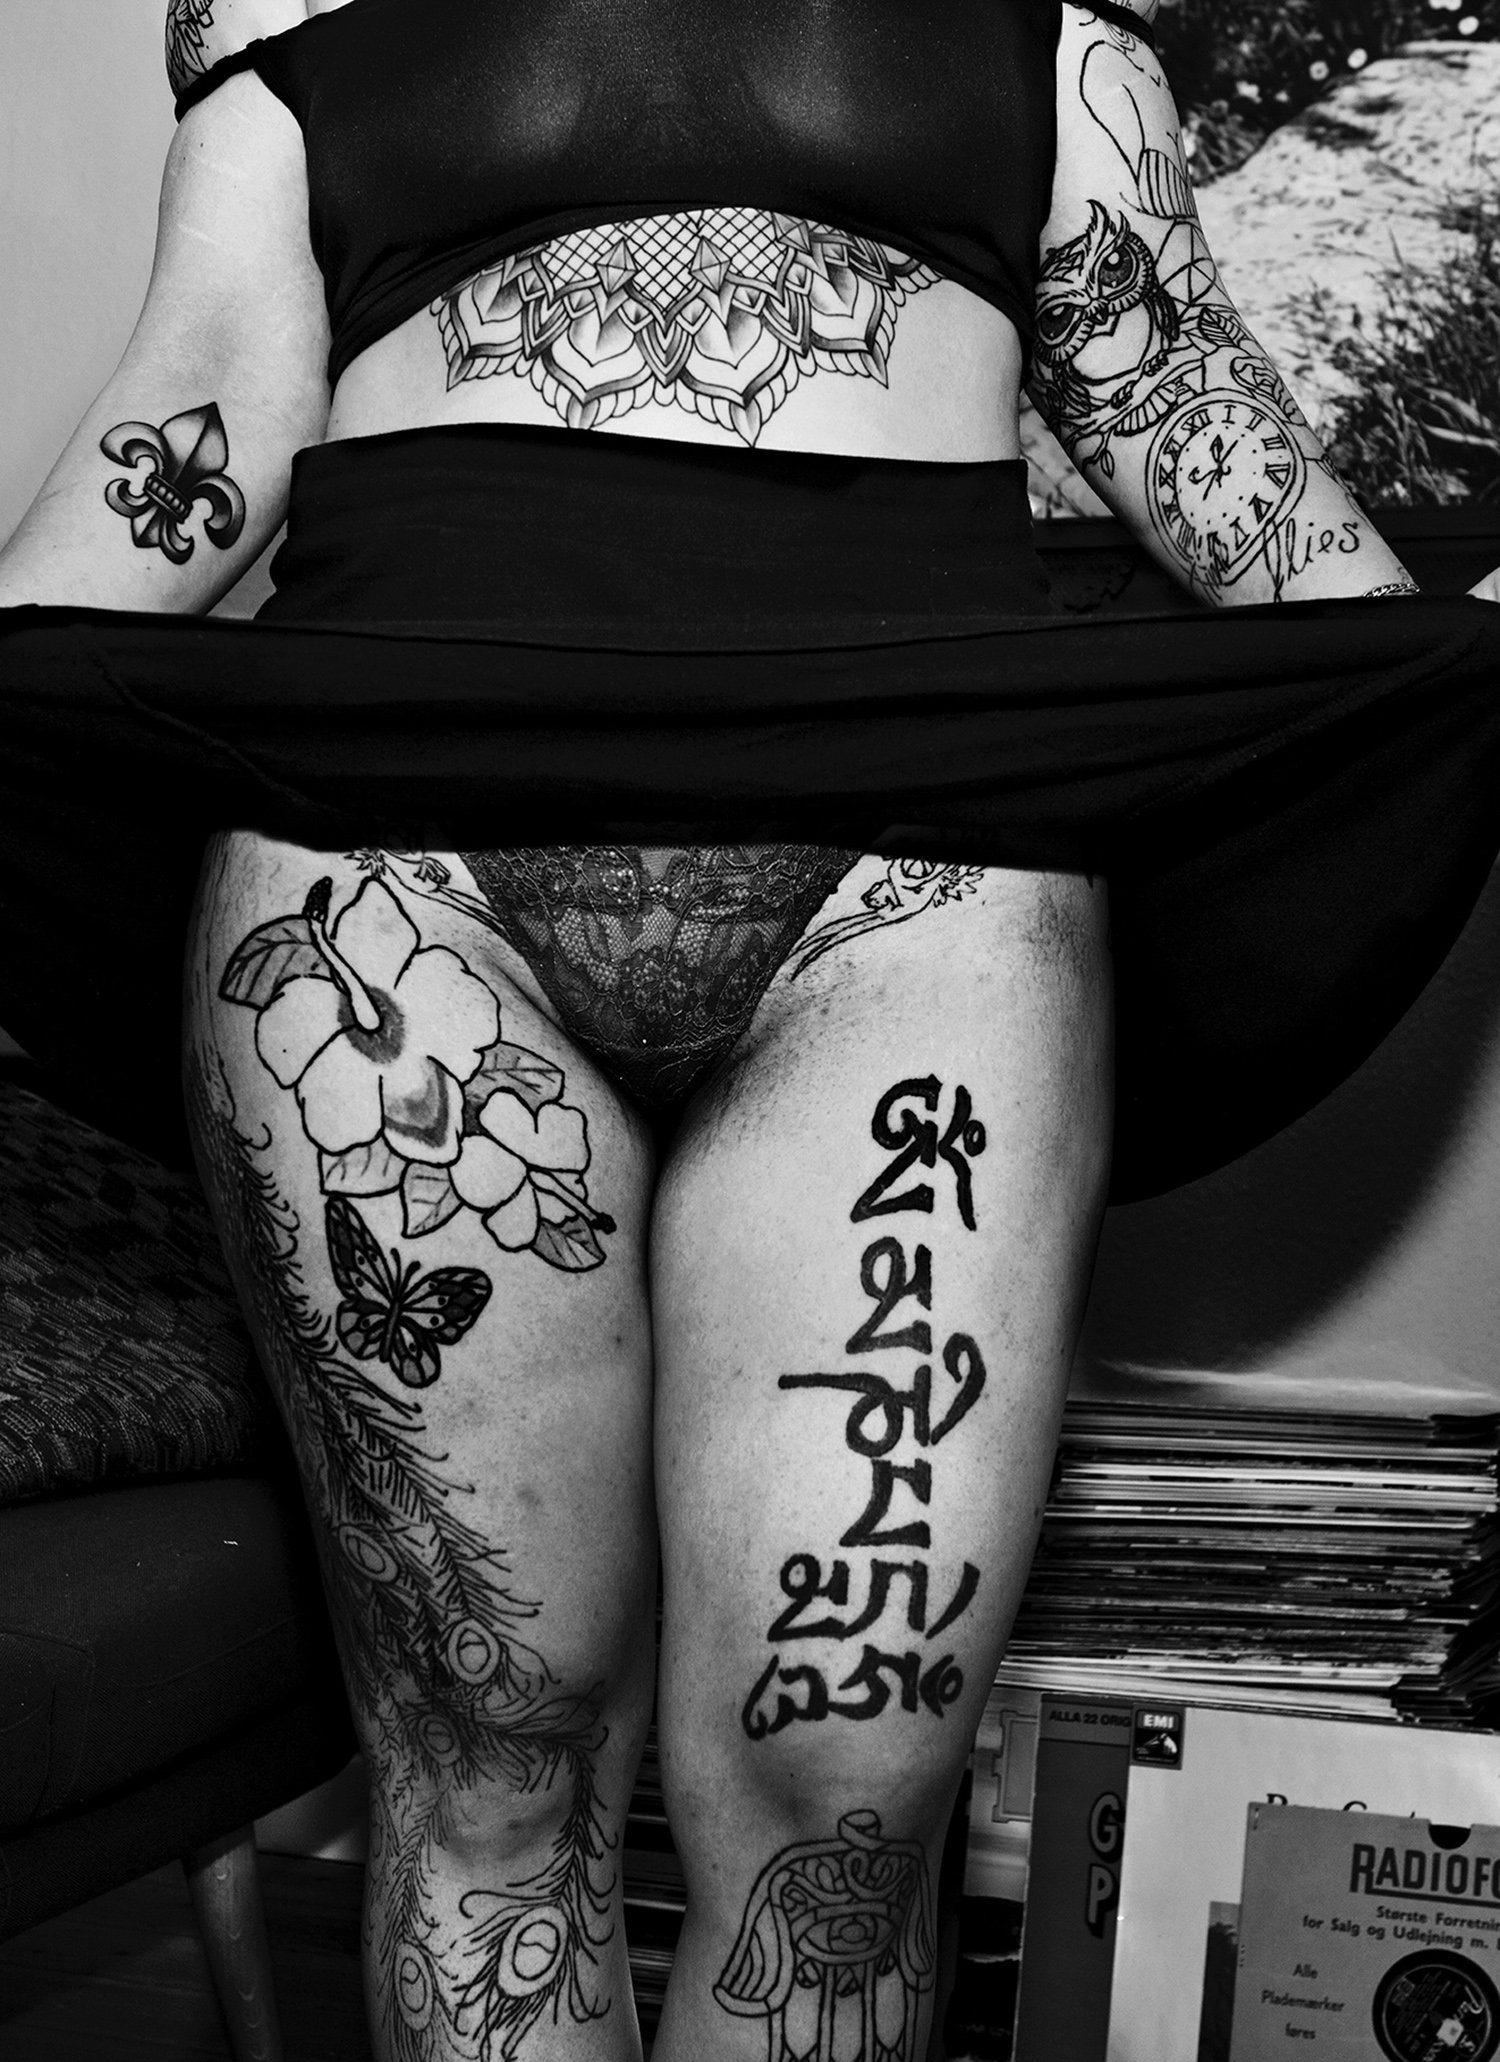 Ein Weiterer Ausschnitt einer Frau, die ihren Rock hebt und damit ihre diversen Tattoos preisgibt.